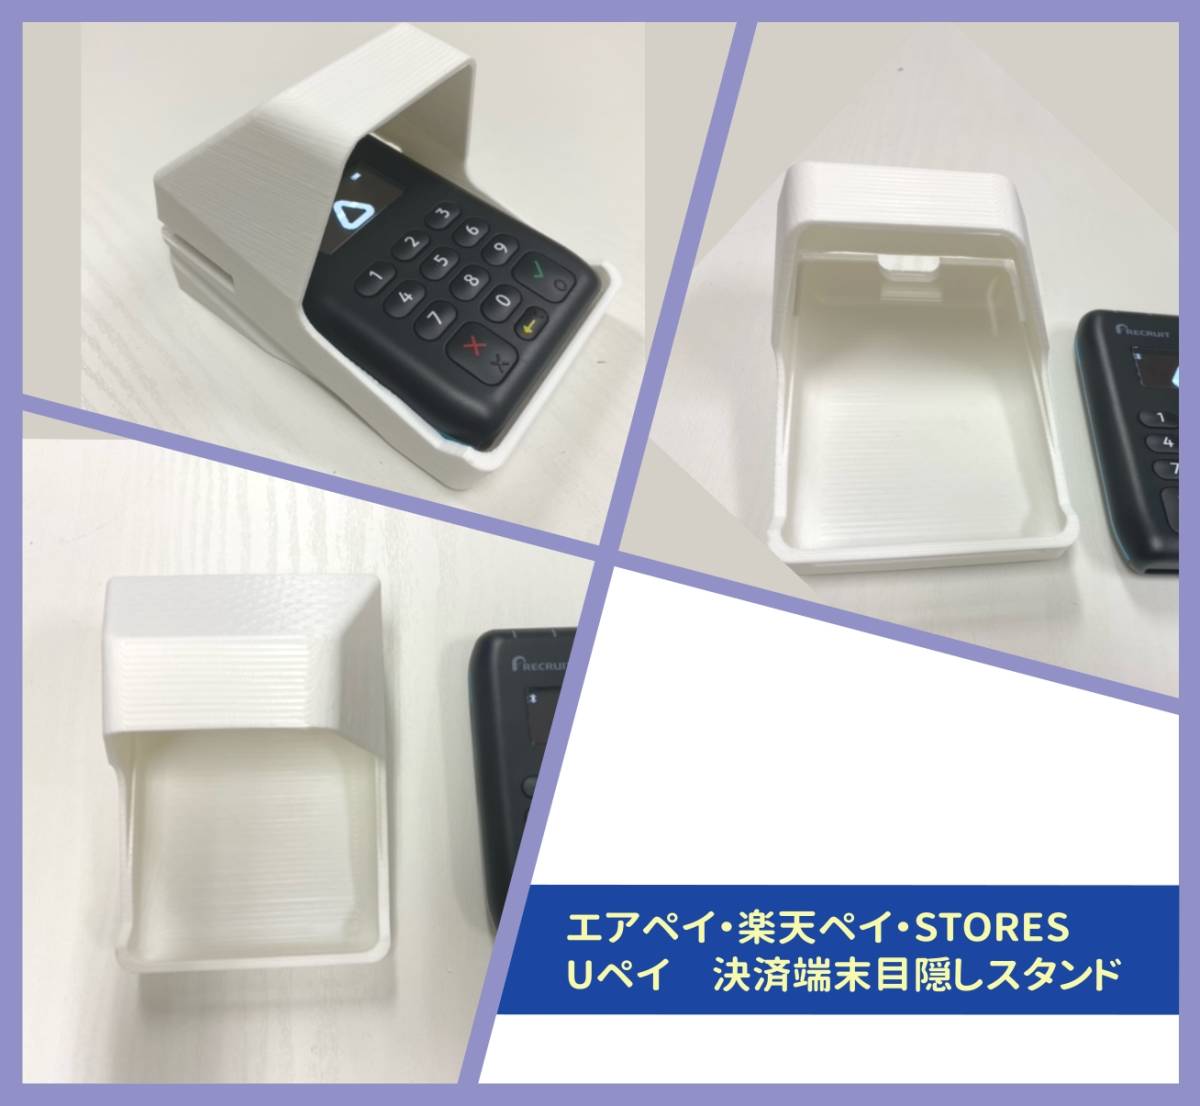 .. Tama . легкий в использовании воздушный pei Rakuten peiUpei устройство для считывания карт глаз .. подставка белый Yamato отправка *b